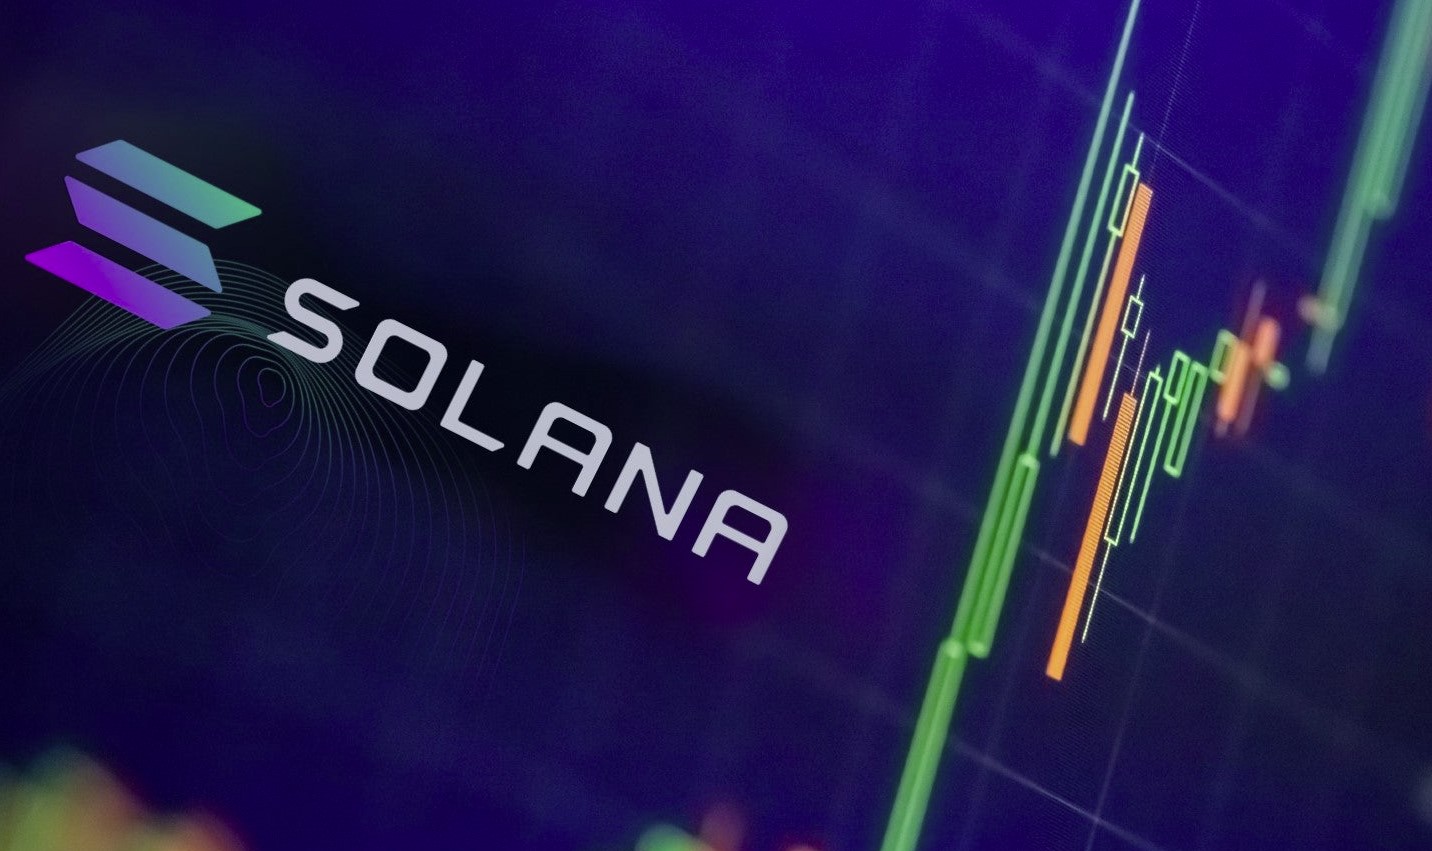 "Les portefeuilles "chauds" de Solana sont piratés, drainant les fonds en crypto-monnaies